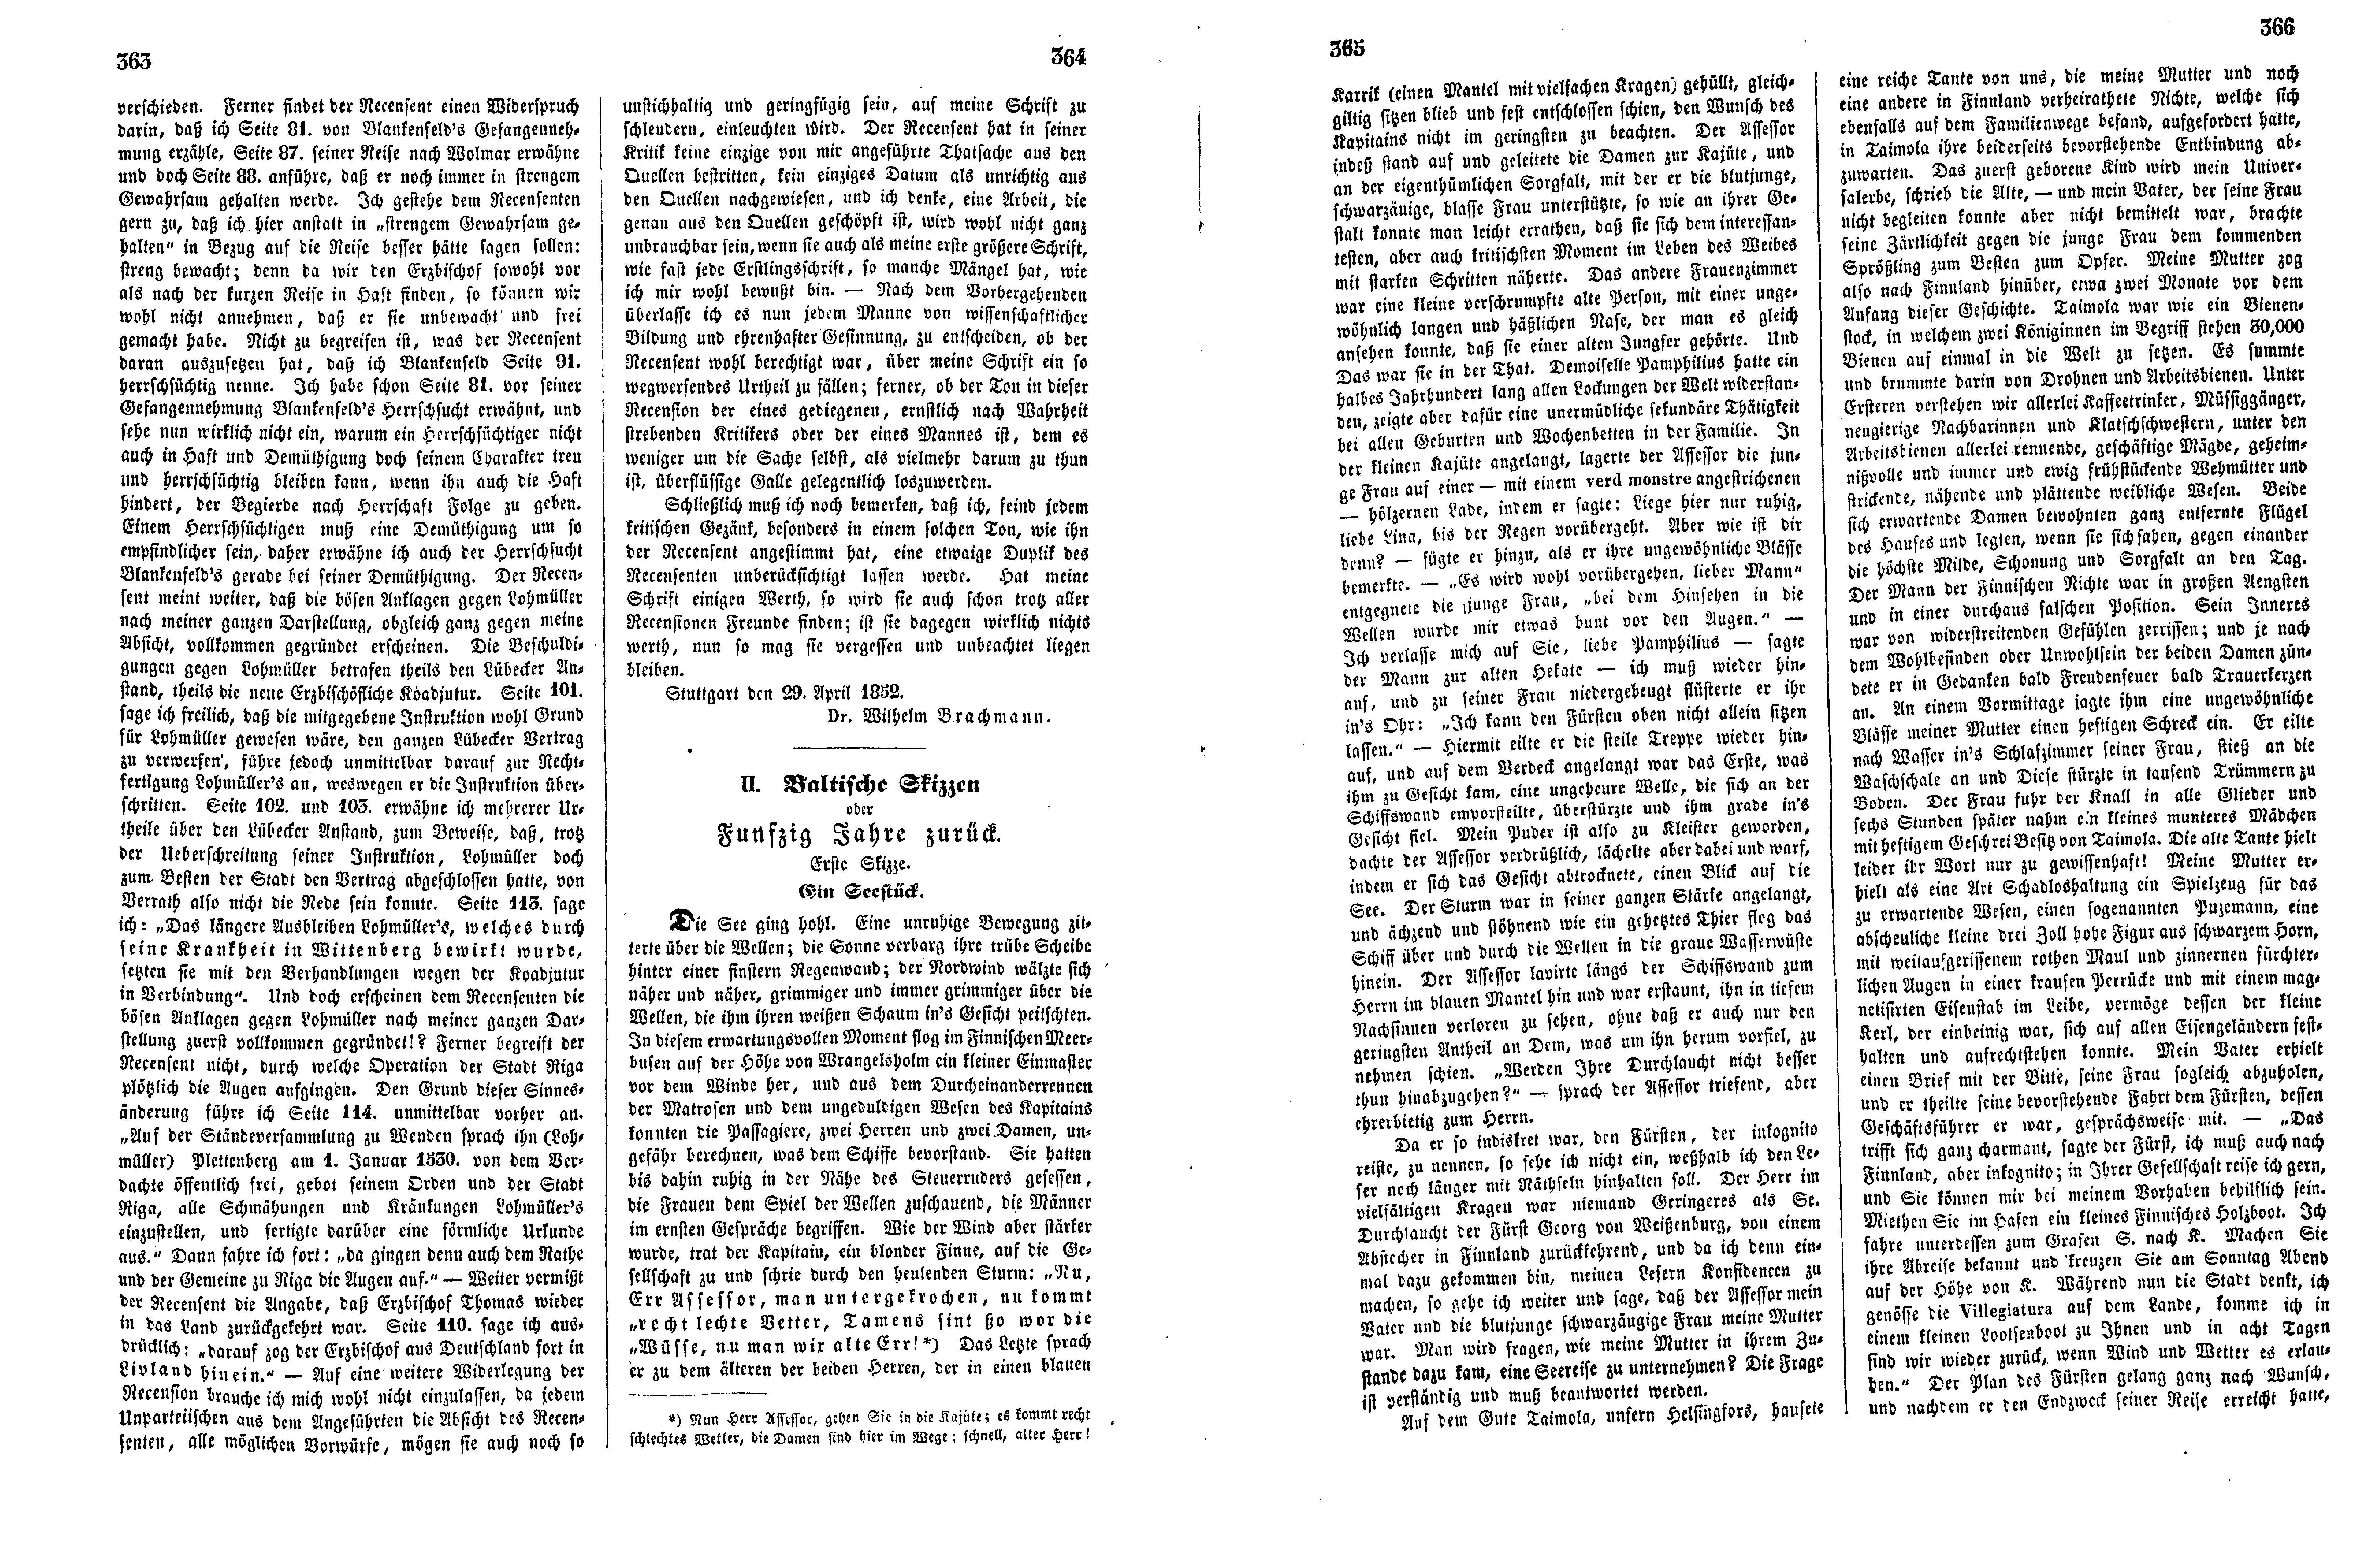 Baltische Skizzen oder Funfzig Jahre zurück (1852) | 1. (363-366) Основной текст